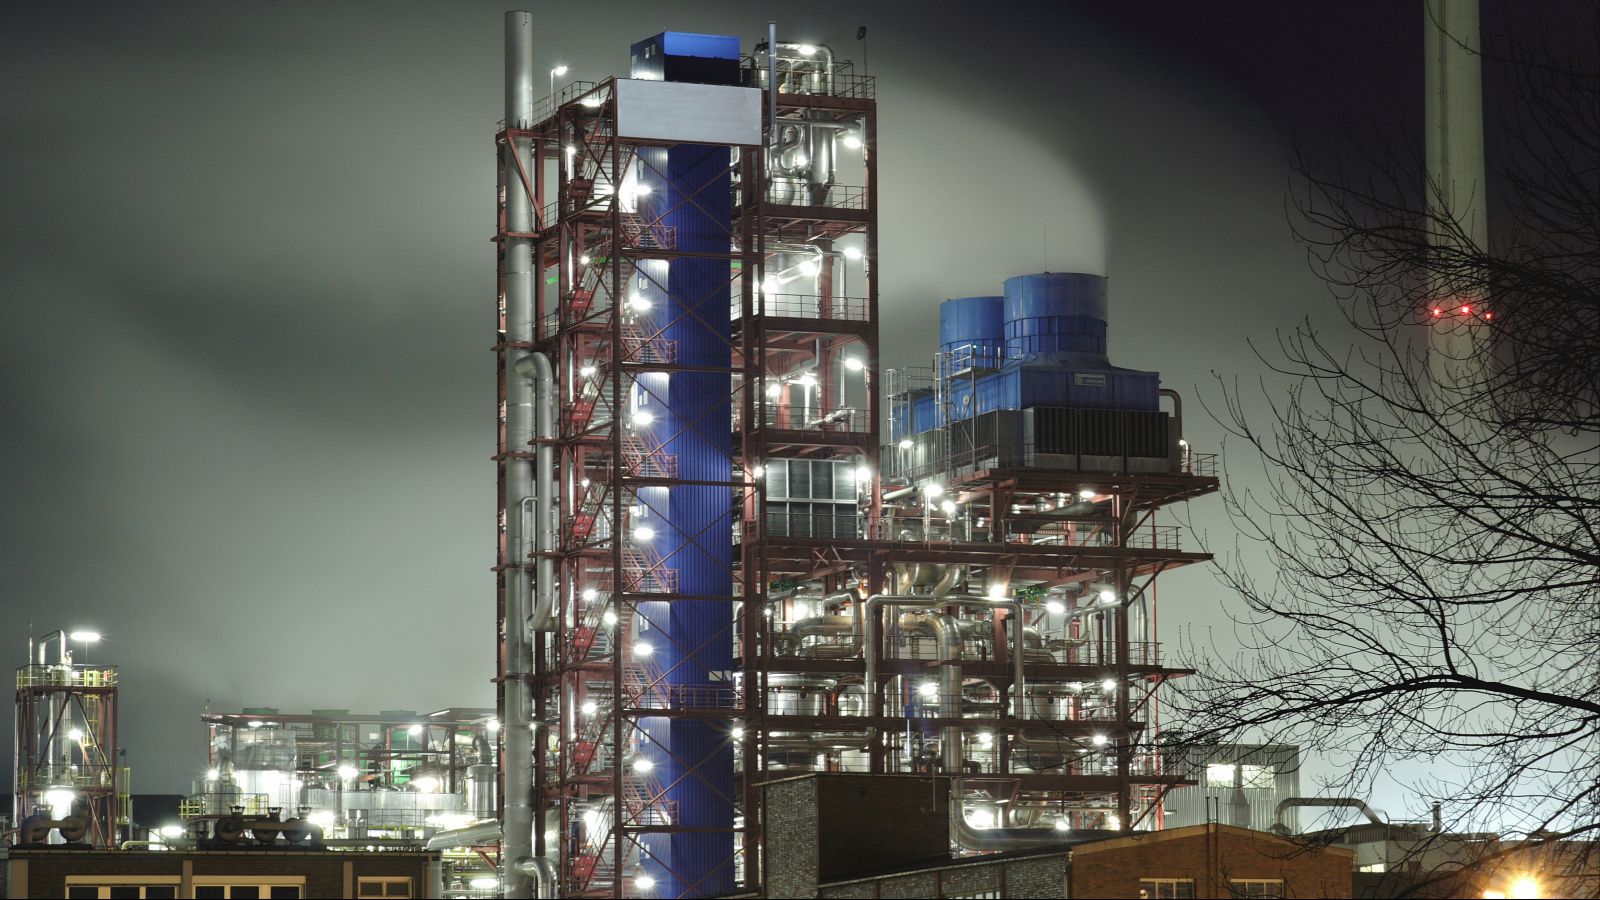 Zu sehen ist eine beleuchtete Chemiefabrik bei Nacht.